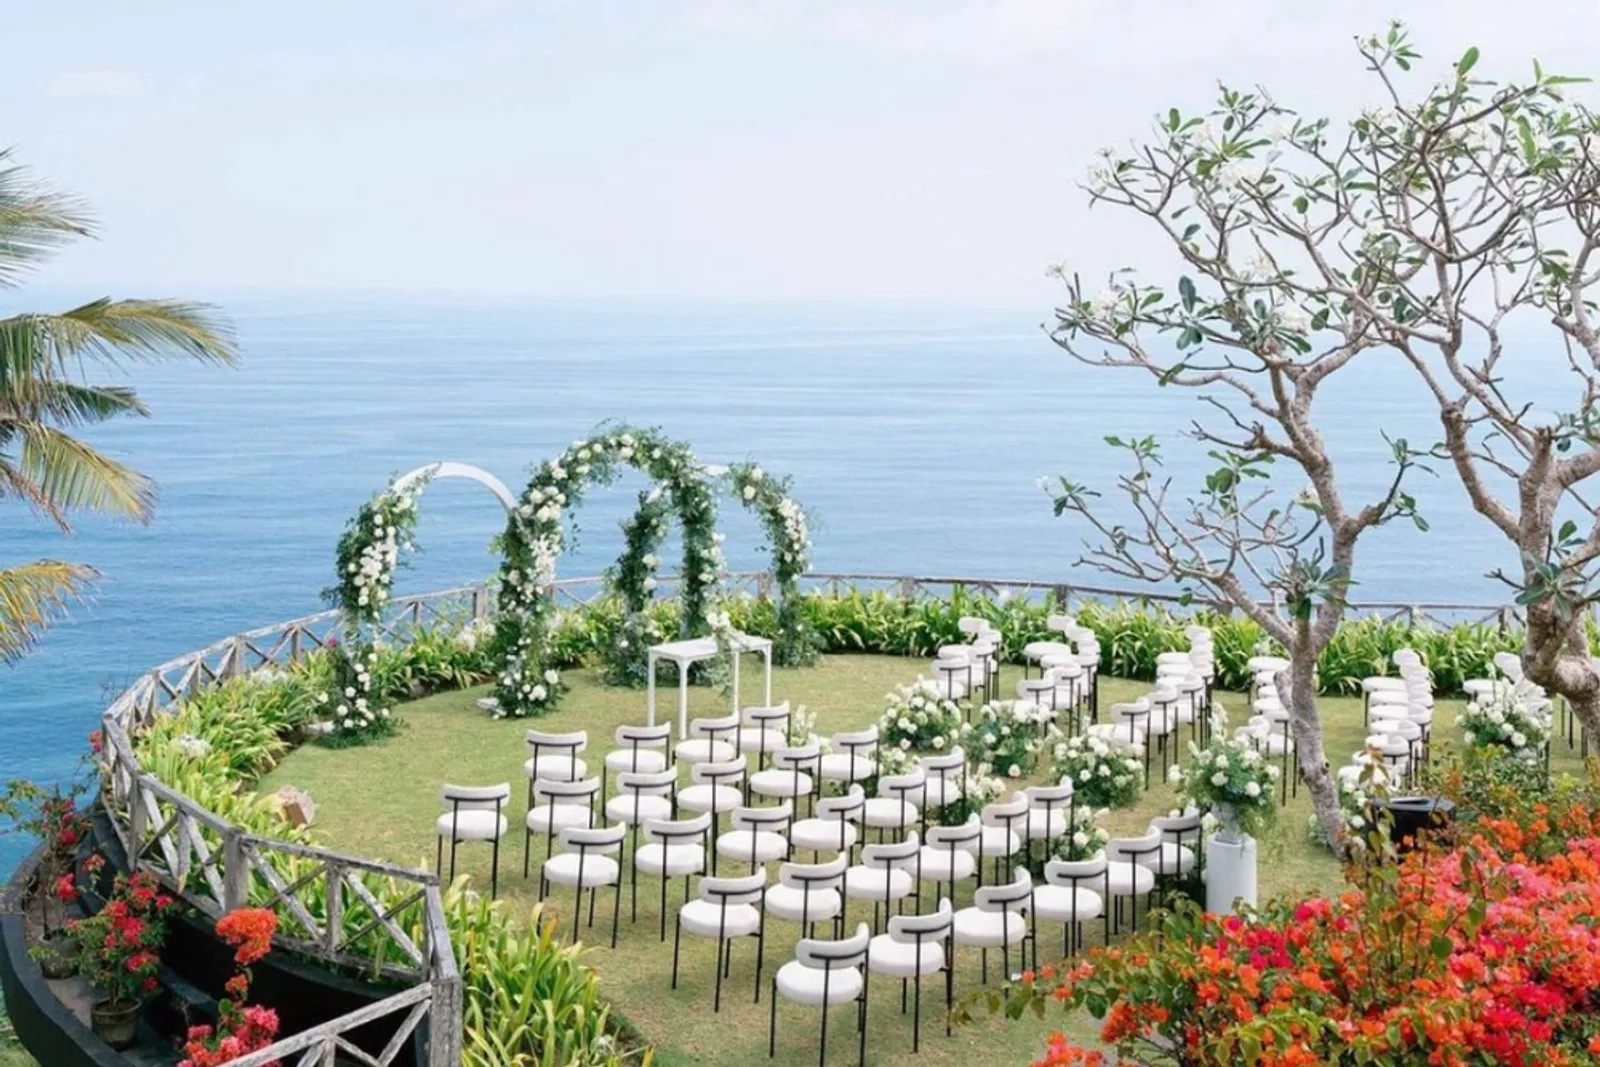 8 Rekomendasi Venue Wedding Outdoor di Bali dengan Pemandangan Indah